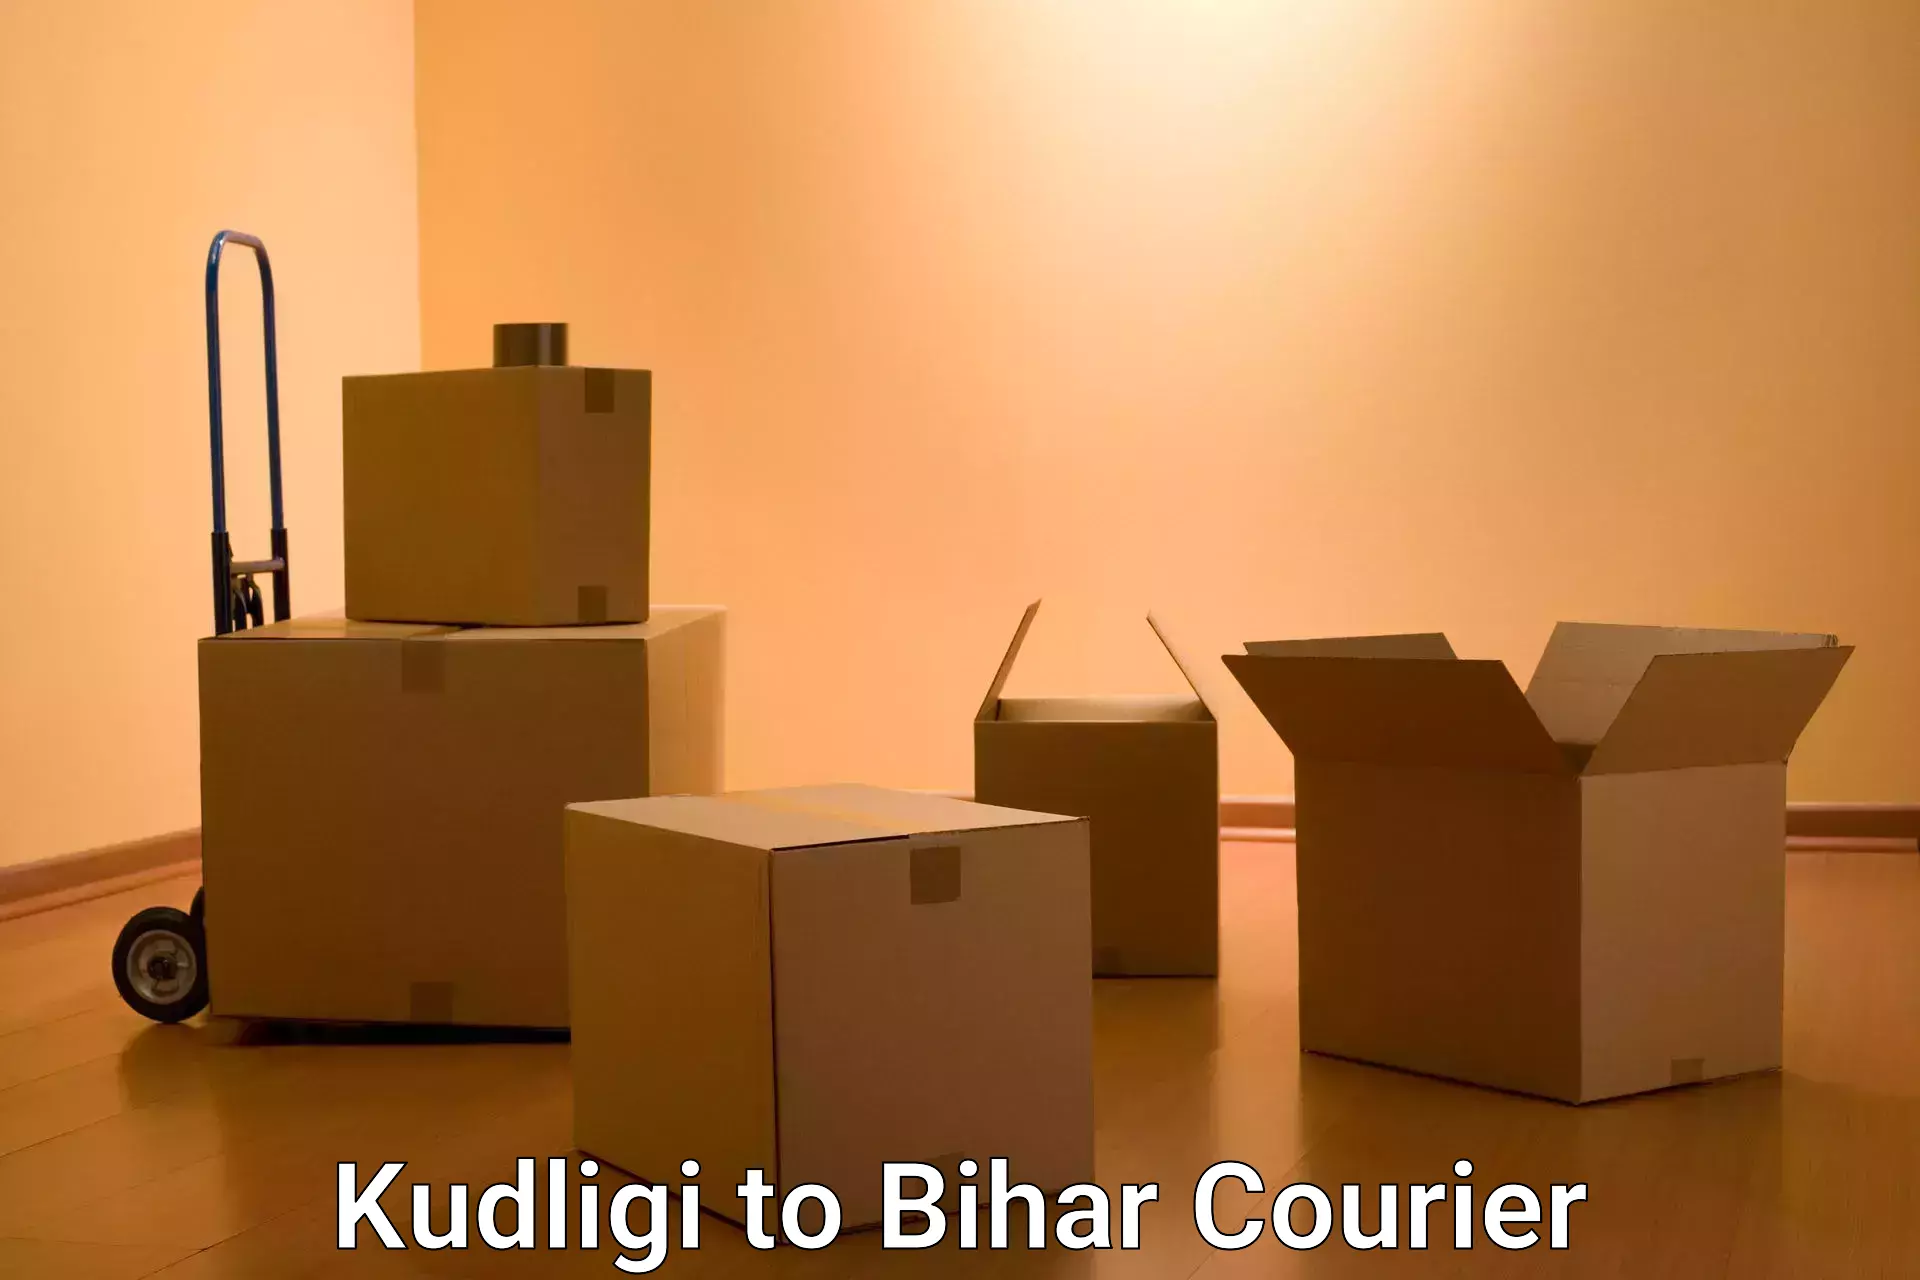 User-friendly delivery service Kudligi to Rusera